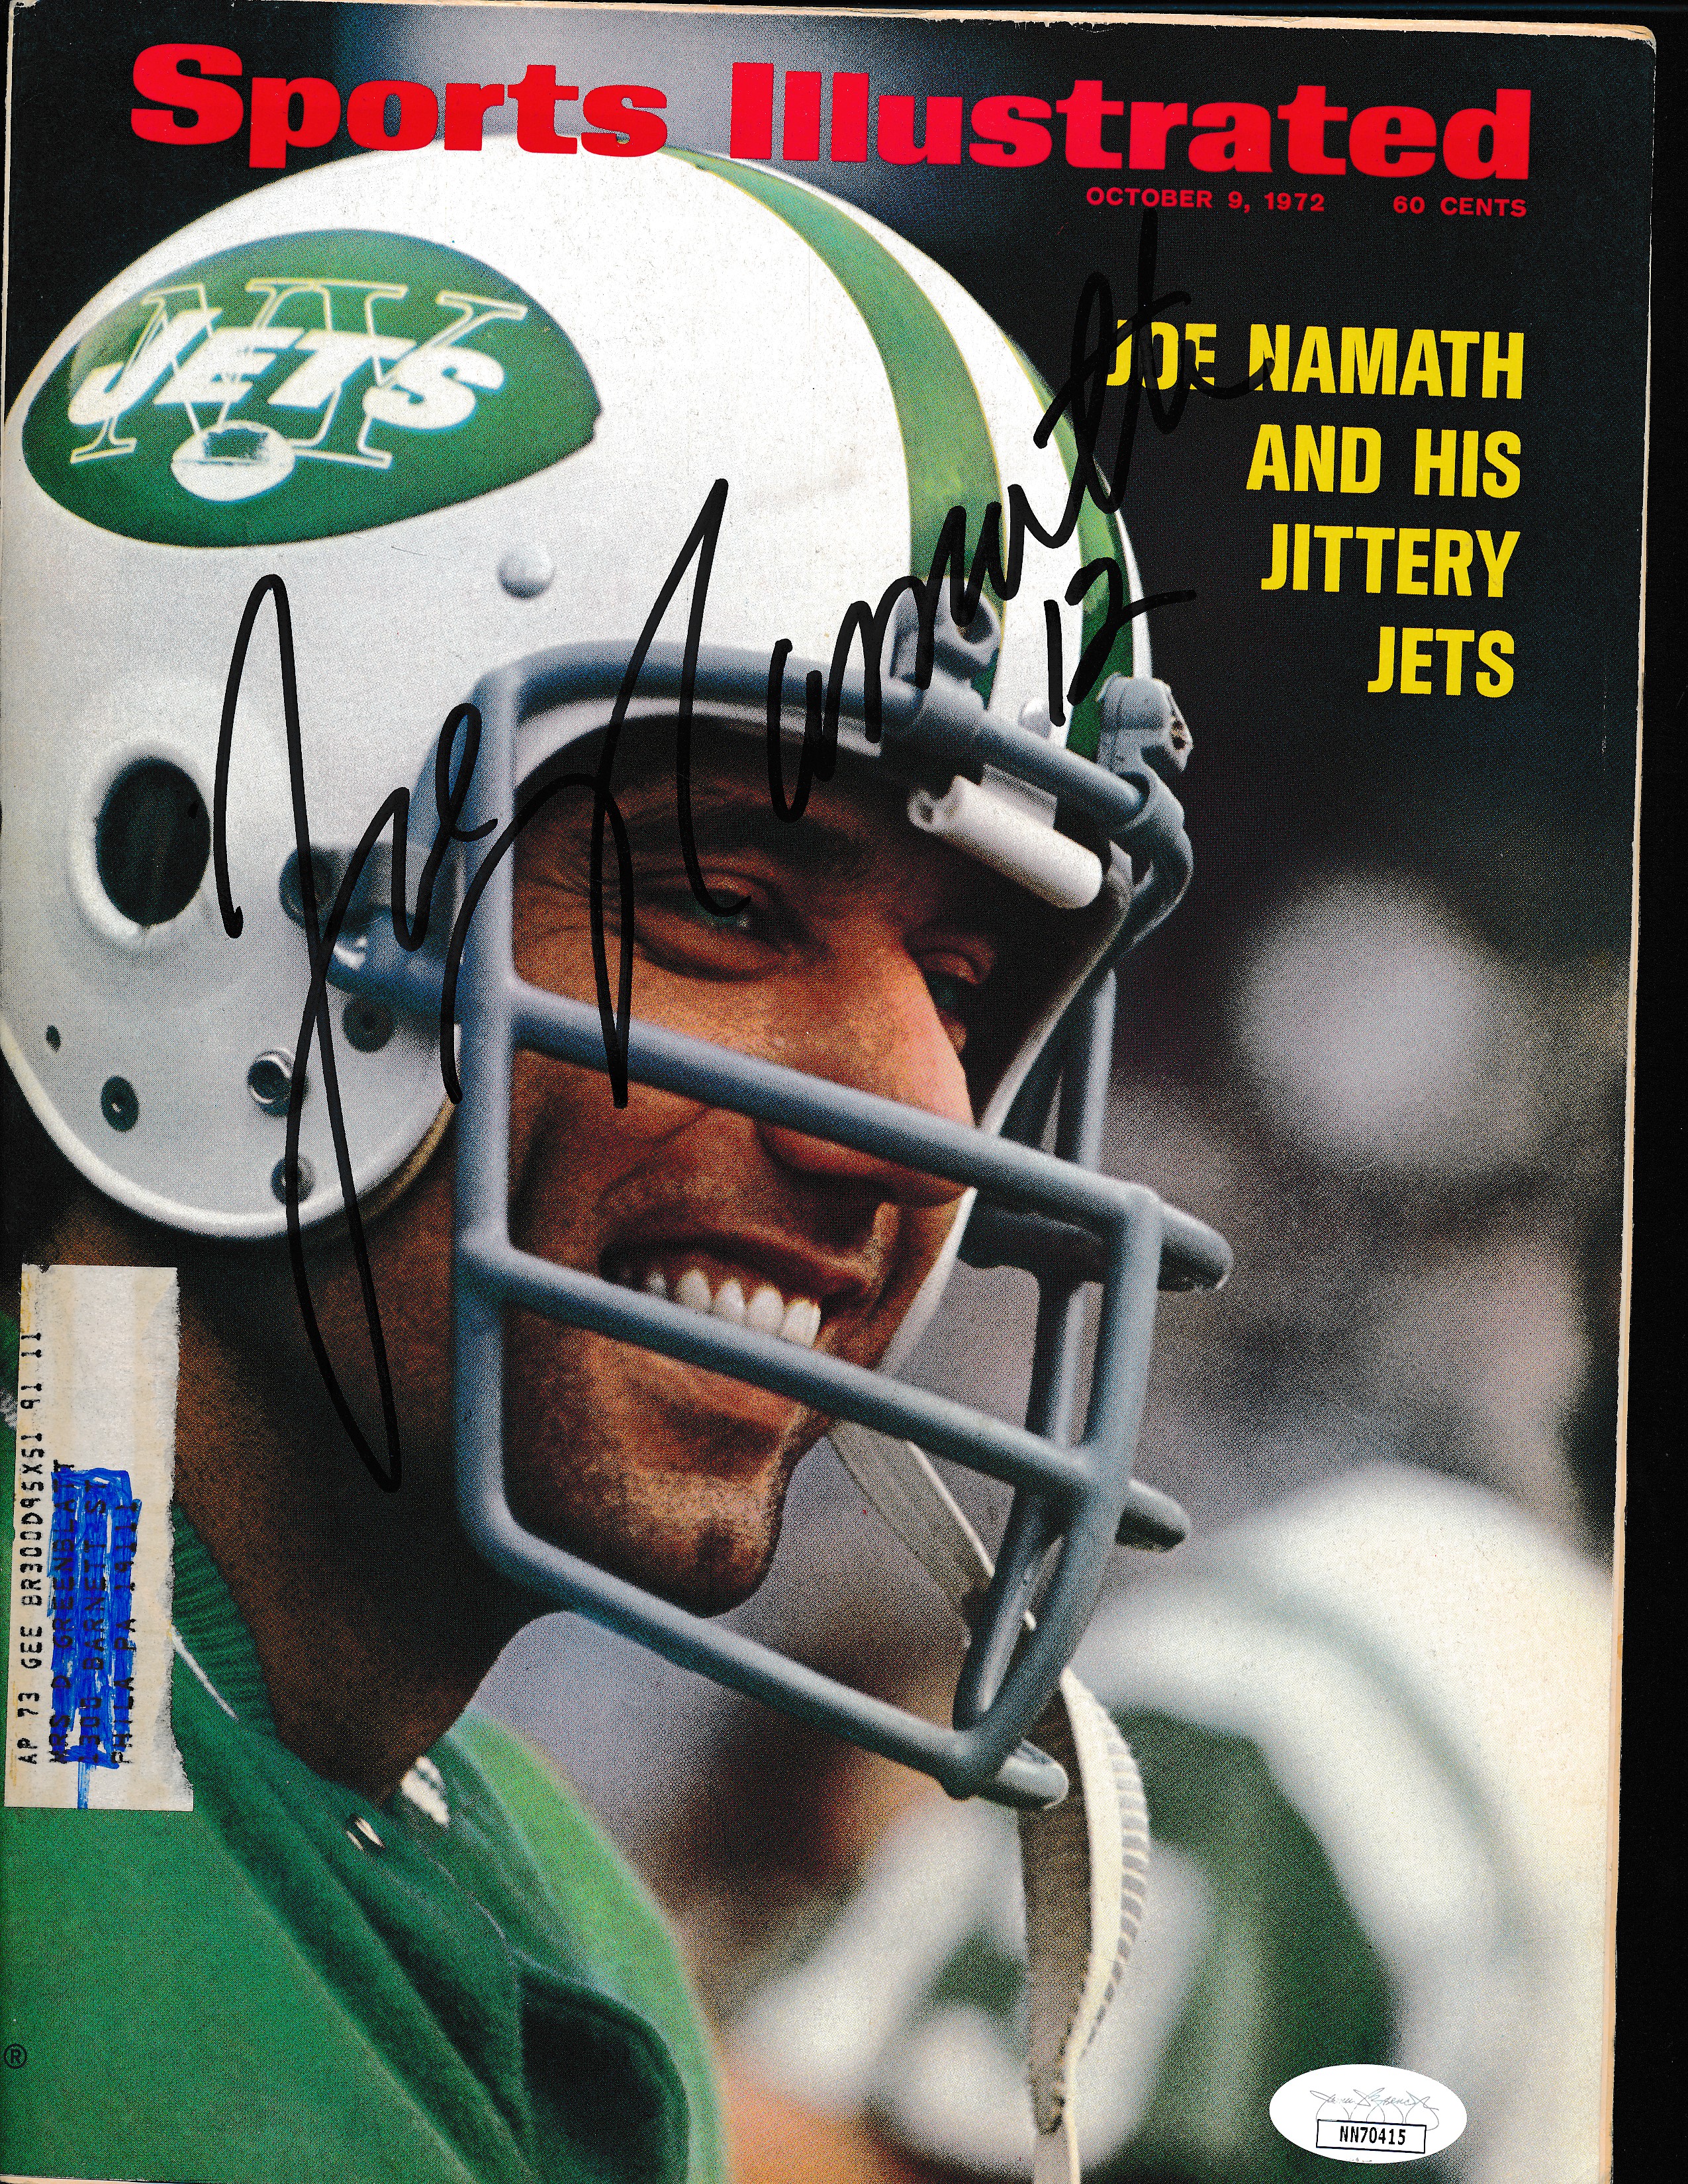 Joe Namath Signed Sports Illustrated Magazine Autograph Auto Jsa Nn70415